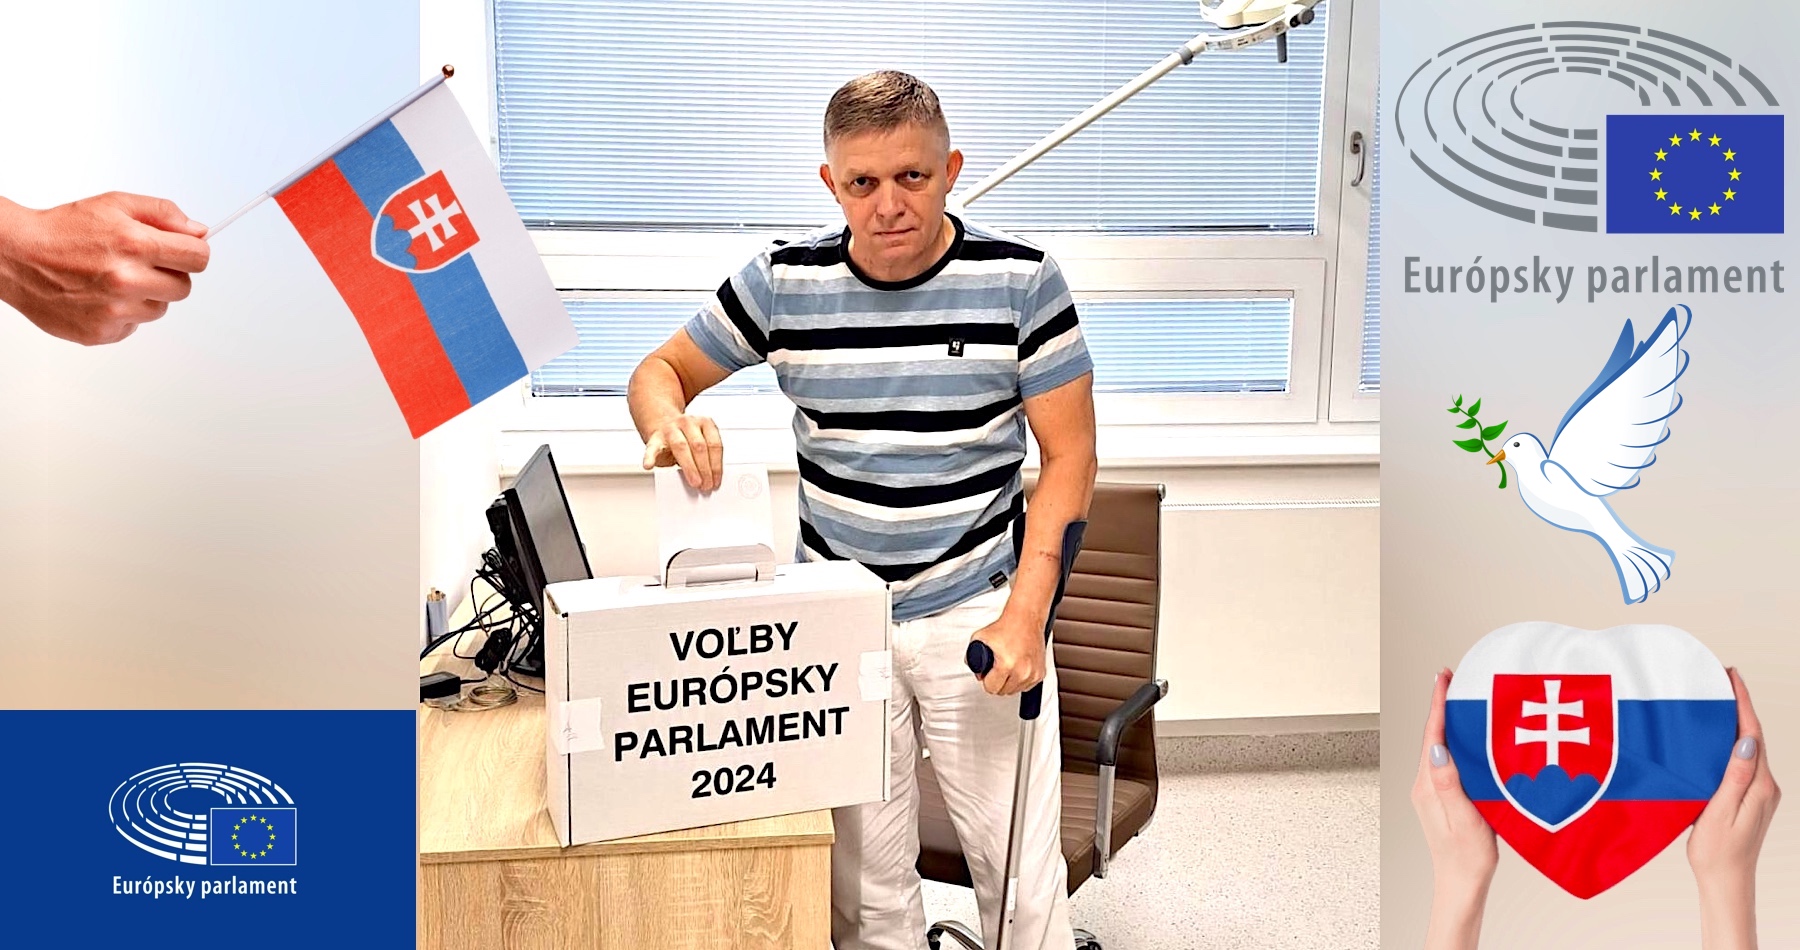 Výrazne schudnutý Robert Fico odvolil v nemocnici. „Je potrebné voliť poslancov Európskeho parlamentu, ktorí budú podporovať mierové iniciatívy a nie pokračovanie vojny,“ vyhlásil slovenský premiér a prisľúbil, že ako predseda vlády nebude ťahať Slovensko do žiadnych vojenských dobrodružstiev a bude čo najviac usilovať o mier